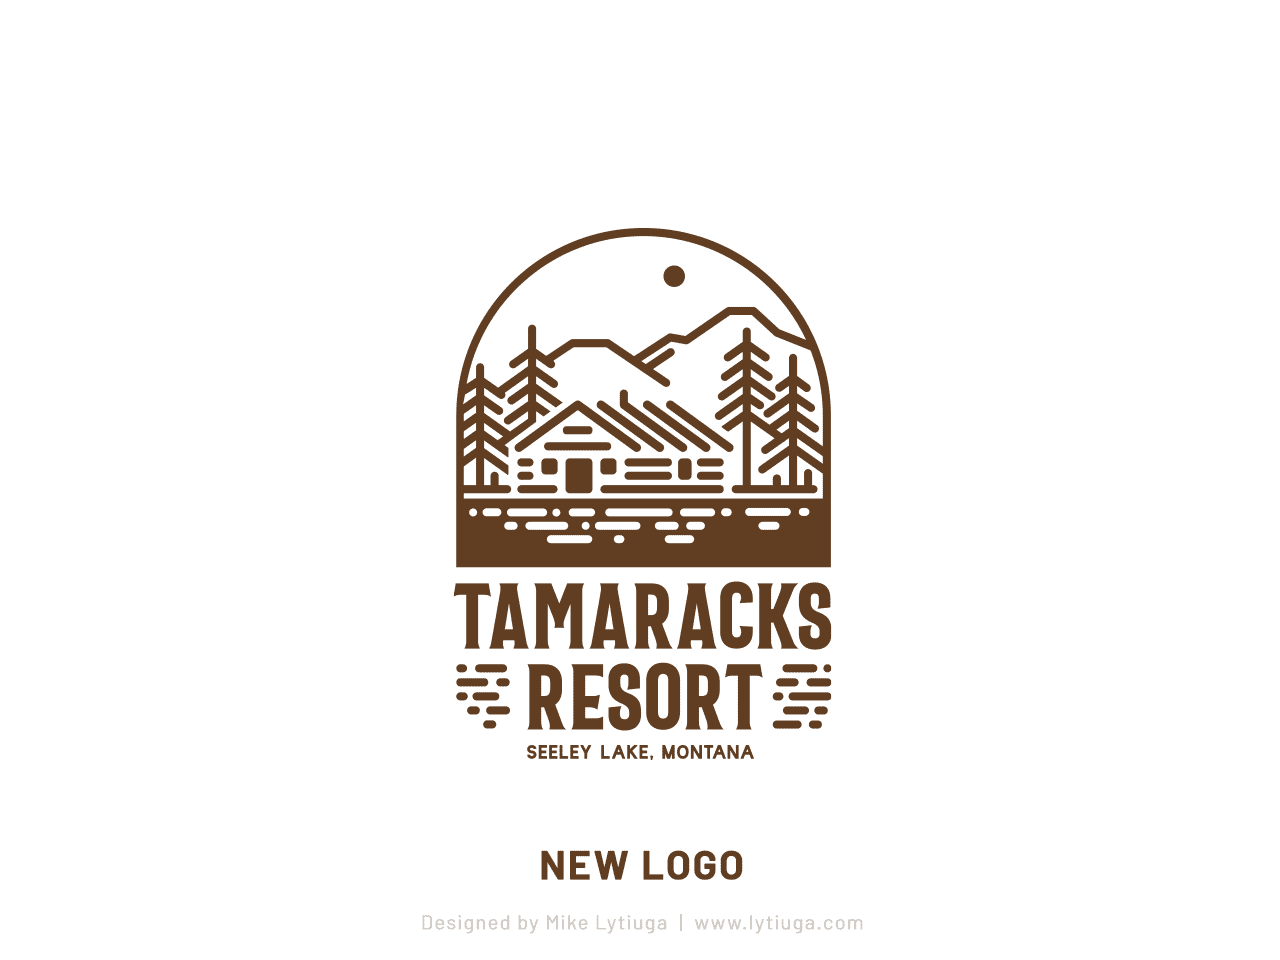 Rebranding for Tamaracks Resont on Seeley Lake, Montana - new logo